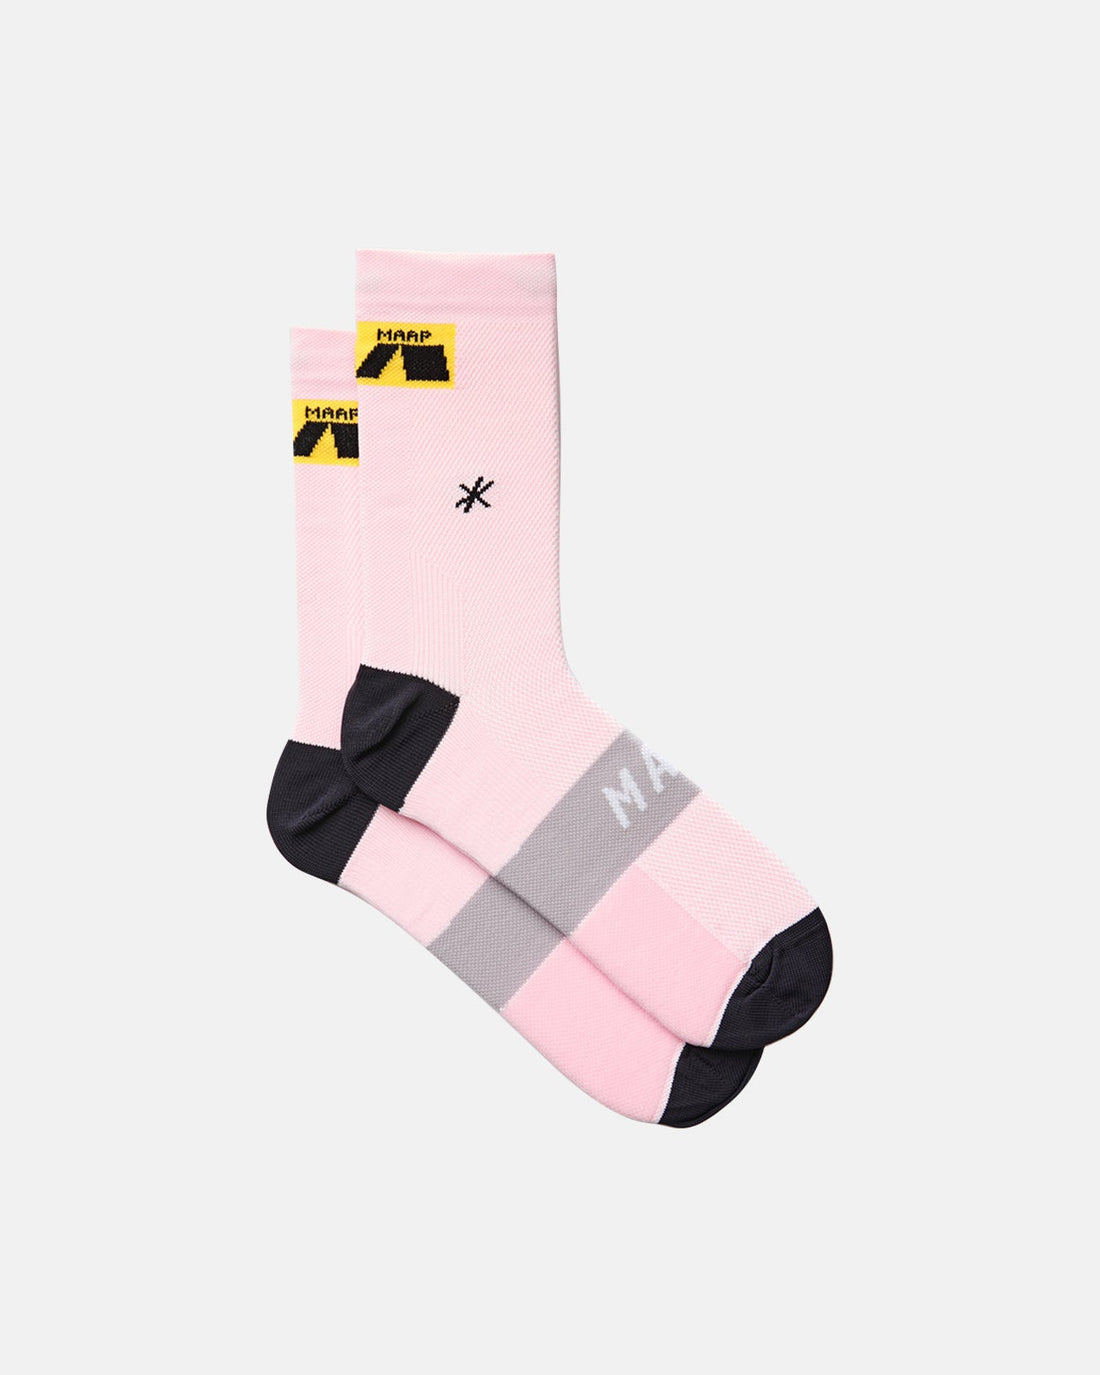 Axis Socks - Pale Pink - MAAP